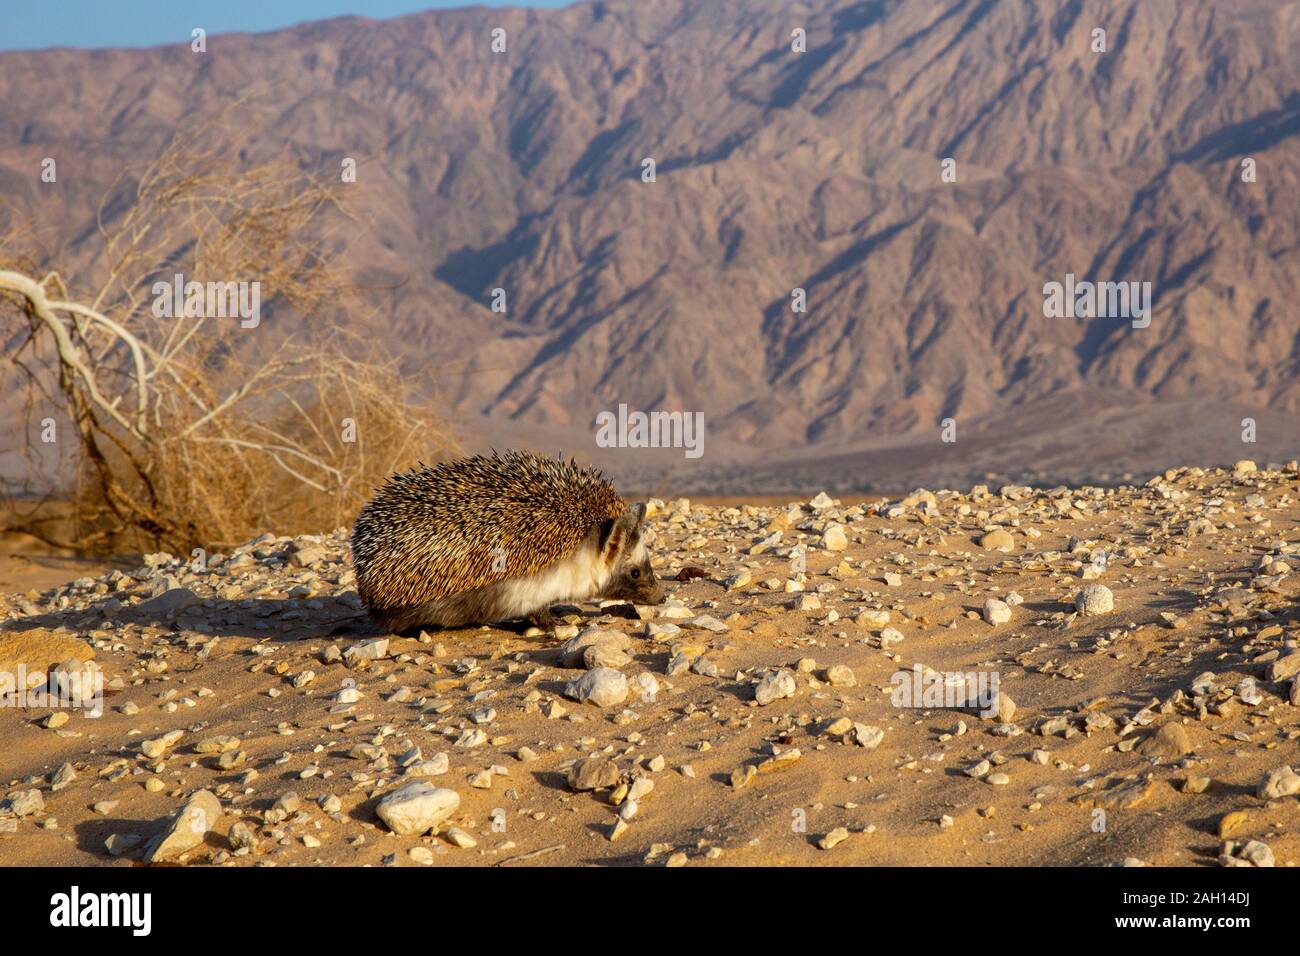 Desert Igel oder Äthiopische Igel (Paraechinus aethiopicus) in der Wüste in Israel fotografiert. Dieser Igel ist ein Allesfresser und bekannt, Stockfoto